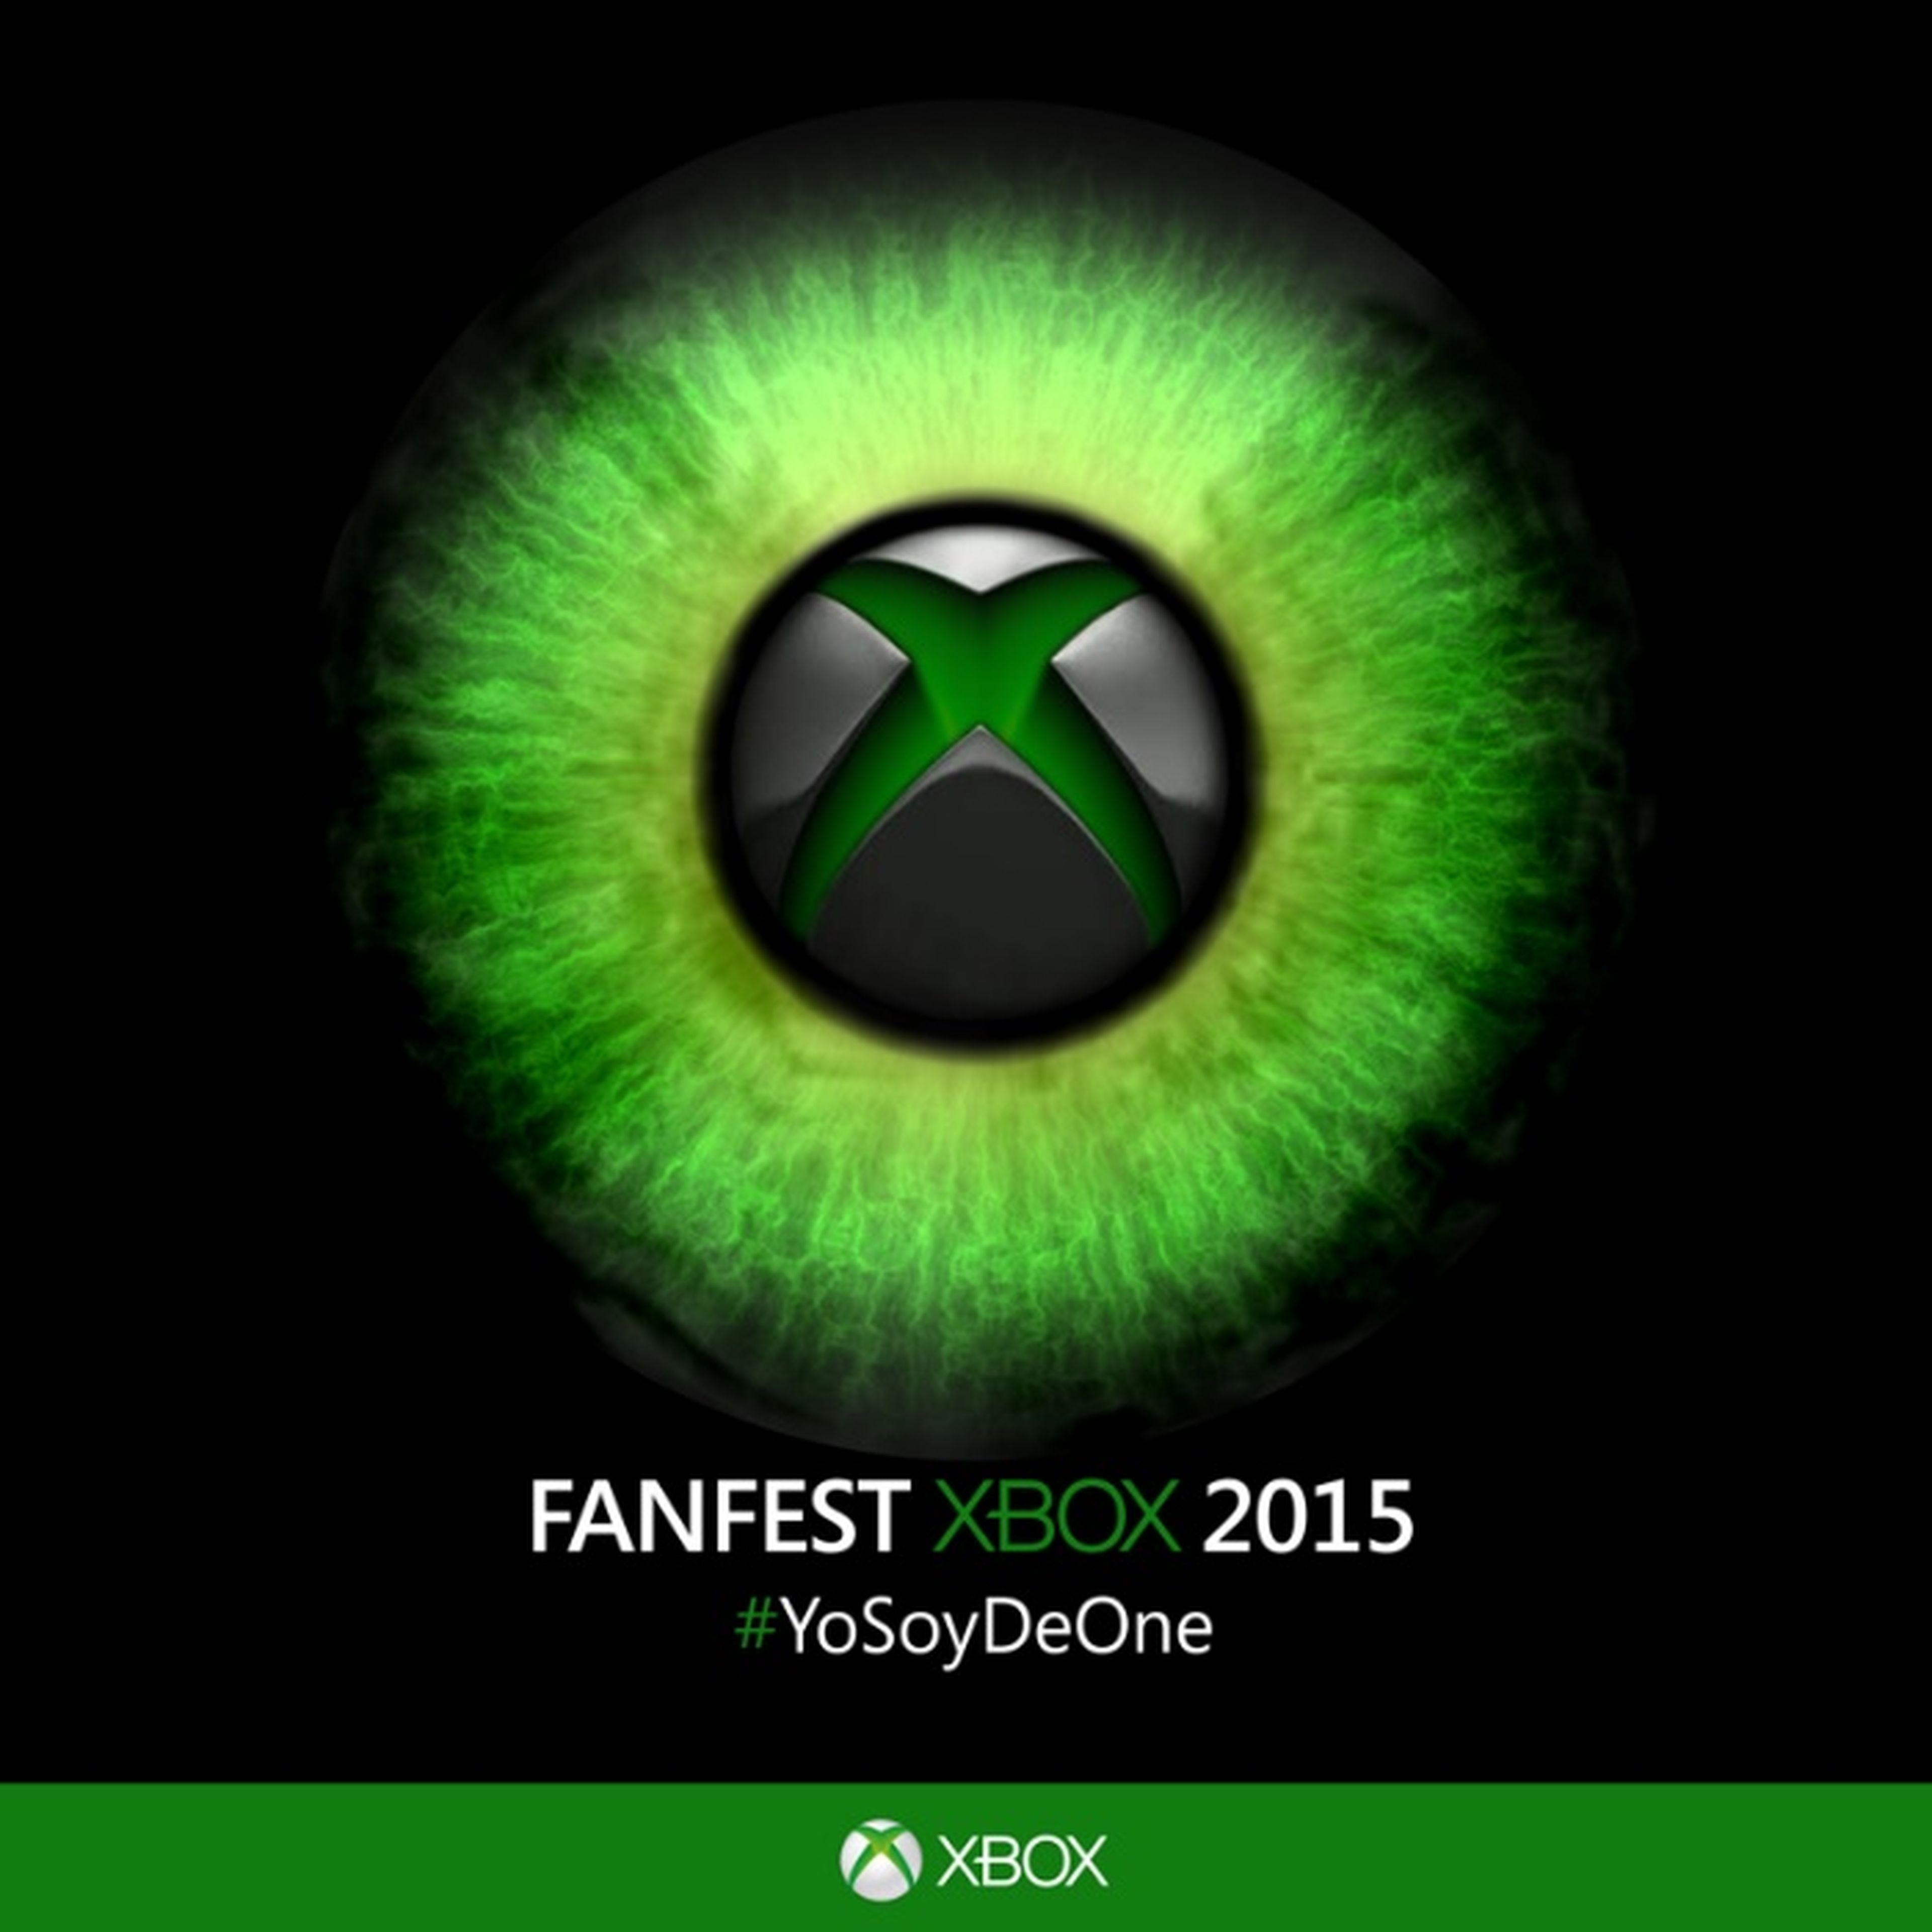 Regalamos 80 entradas para el Xbox Fan Fest de Madrid